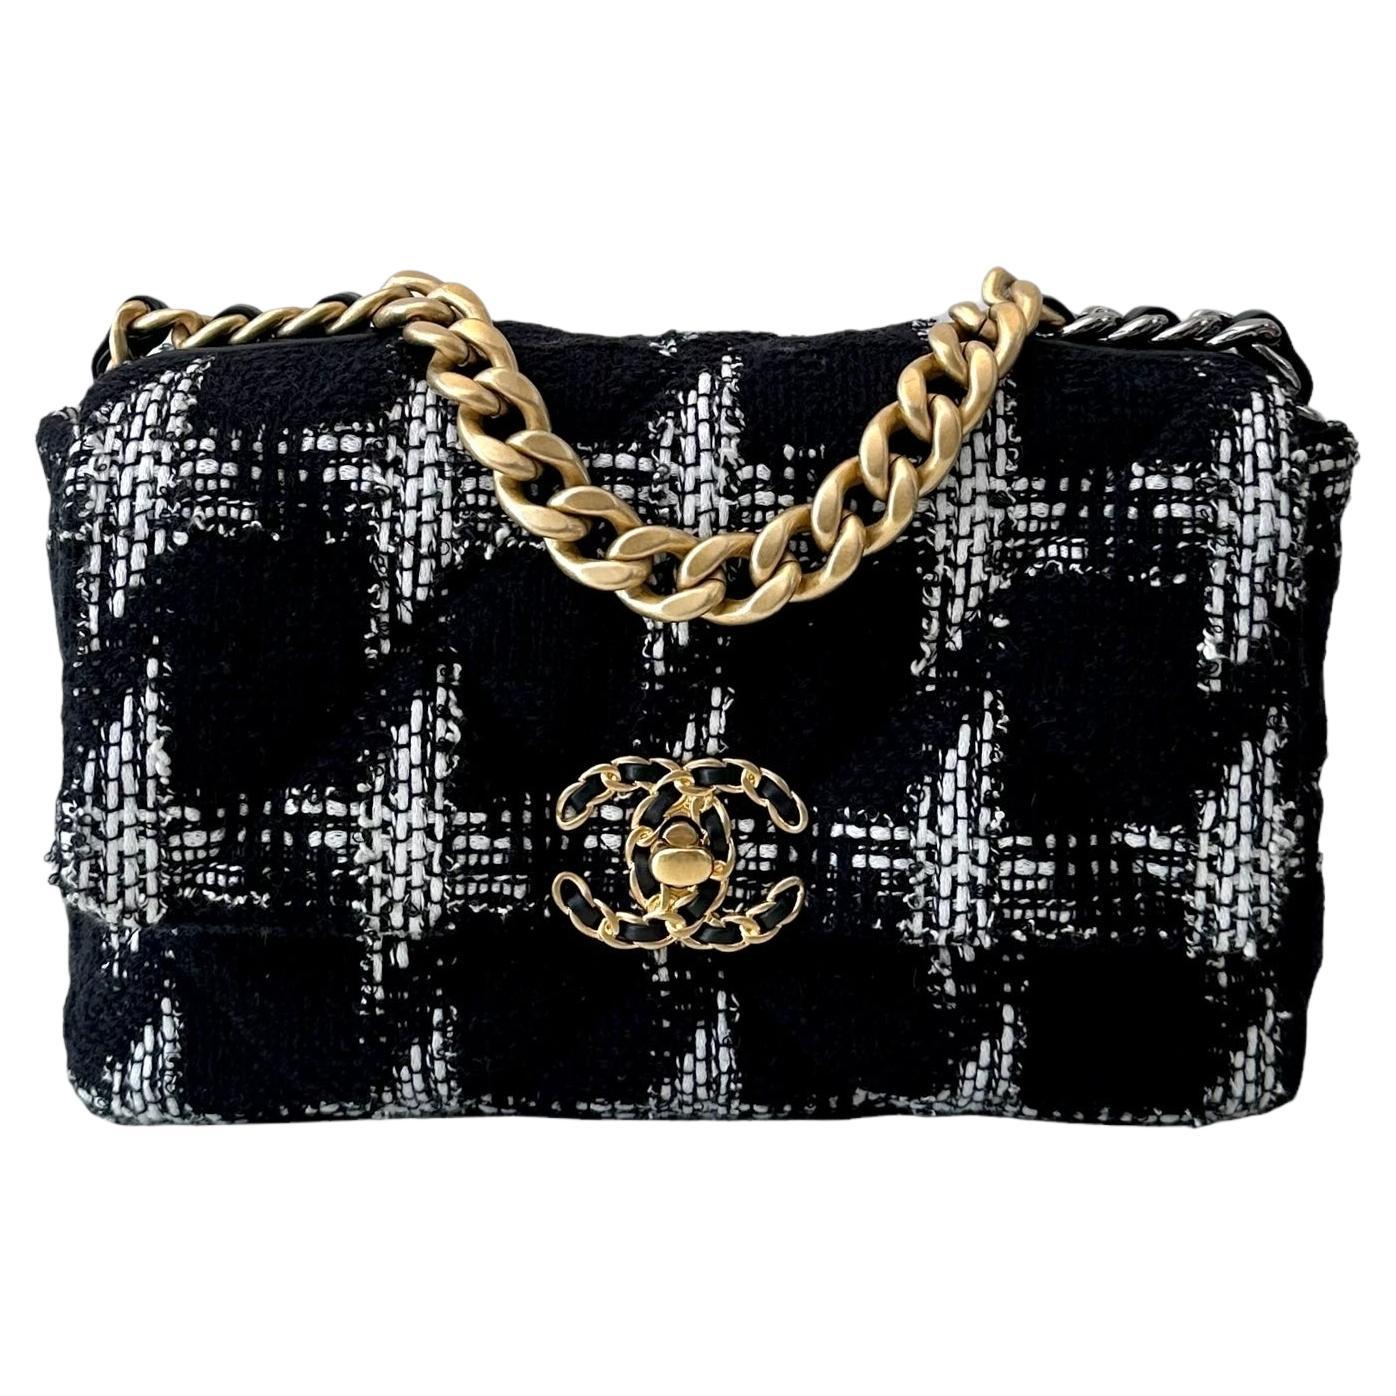 Chanel Chanel 19 Handtasche